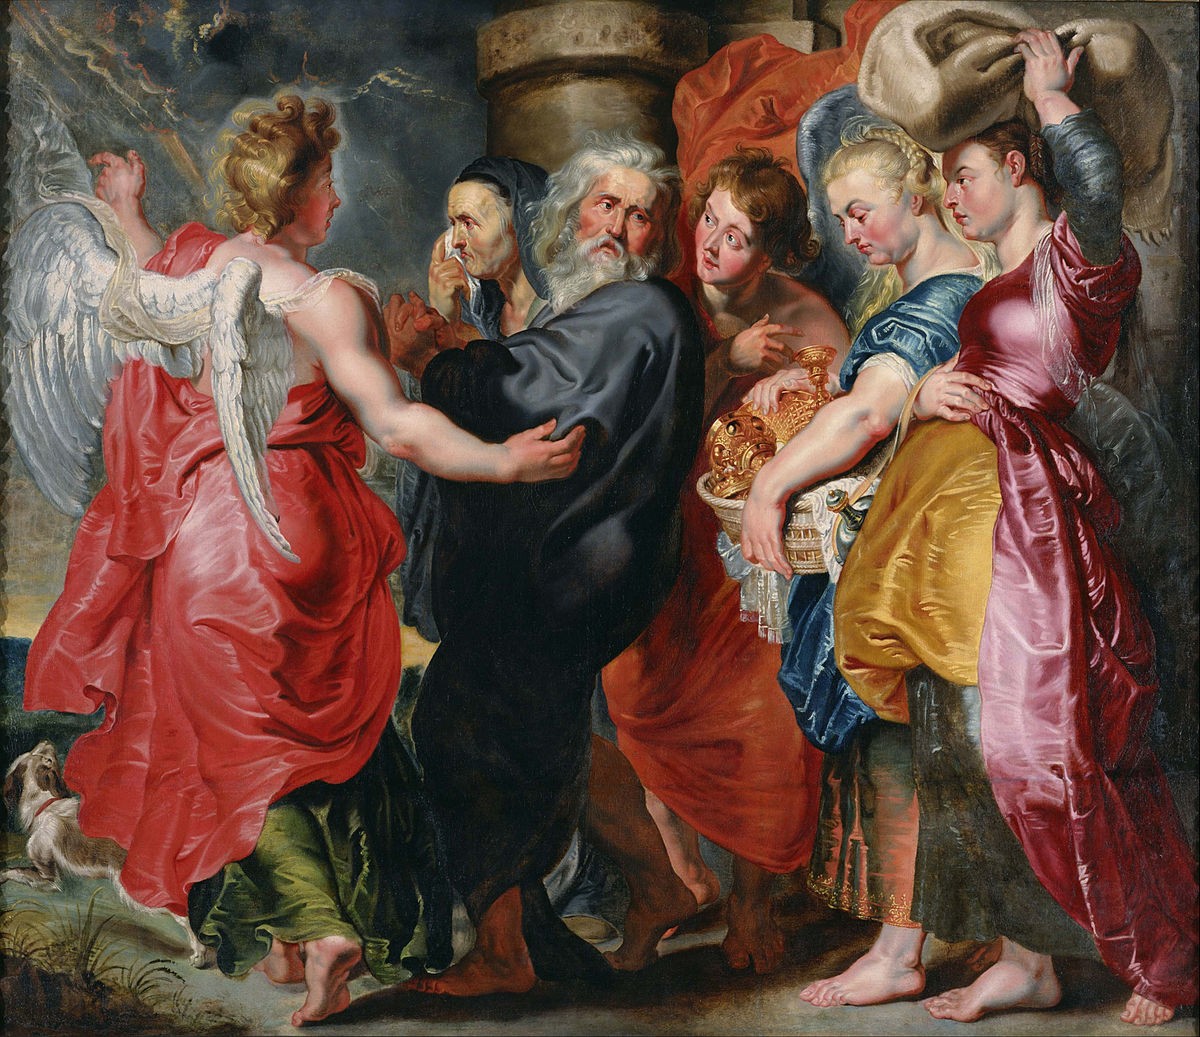 Ló e sua família fogem de Sodoma (Jacob Jordaens, 1593-1678)